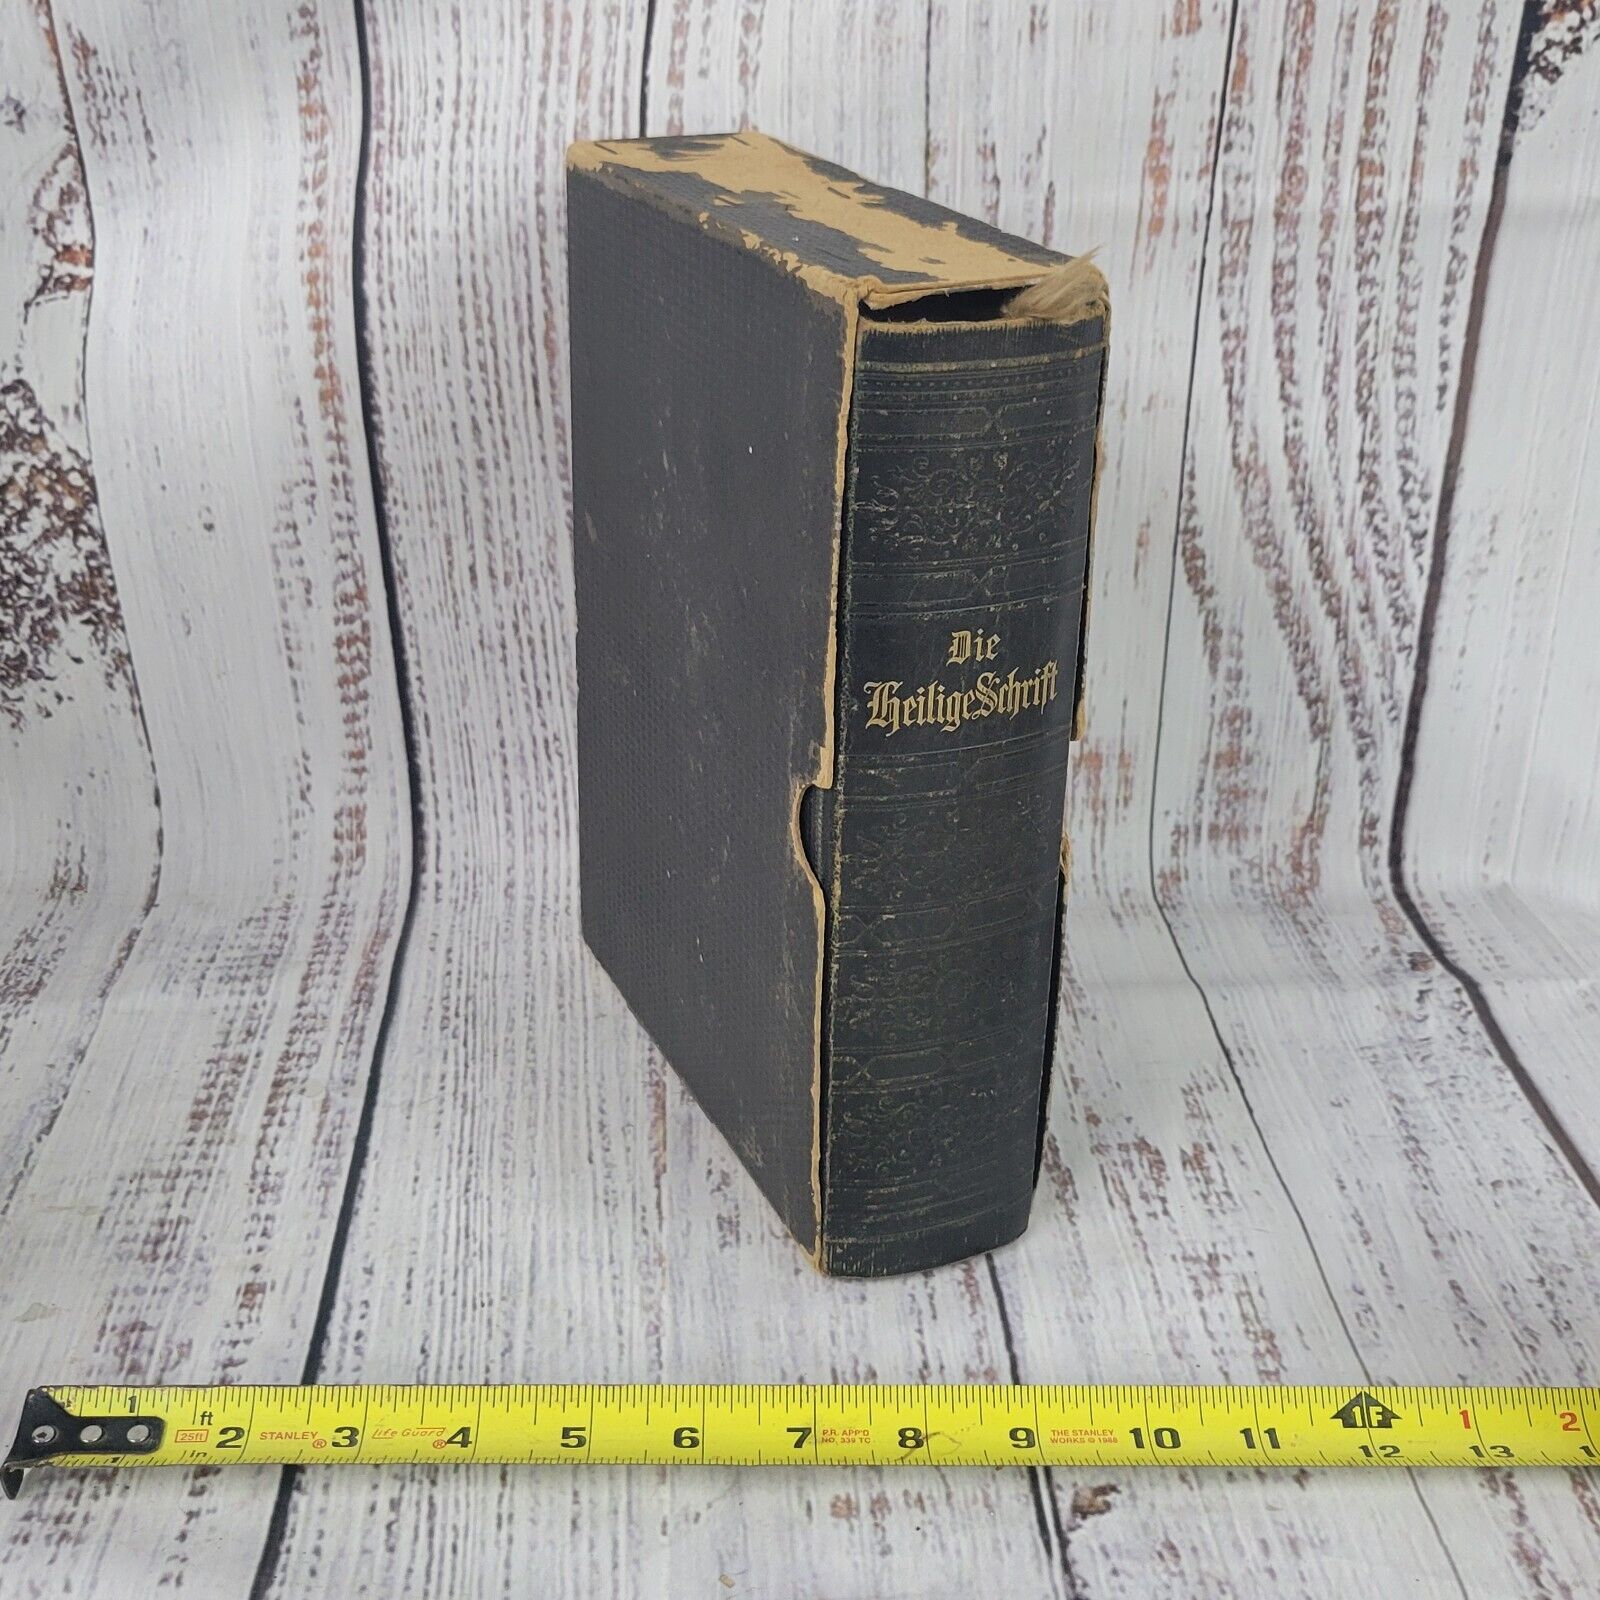 Vintage German Bible DIE BIBEL HEILIGE SCHRIFT neuen teftaments w/slide cover